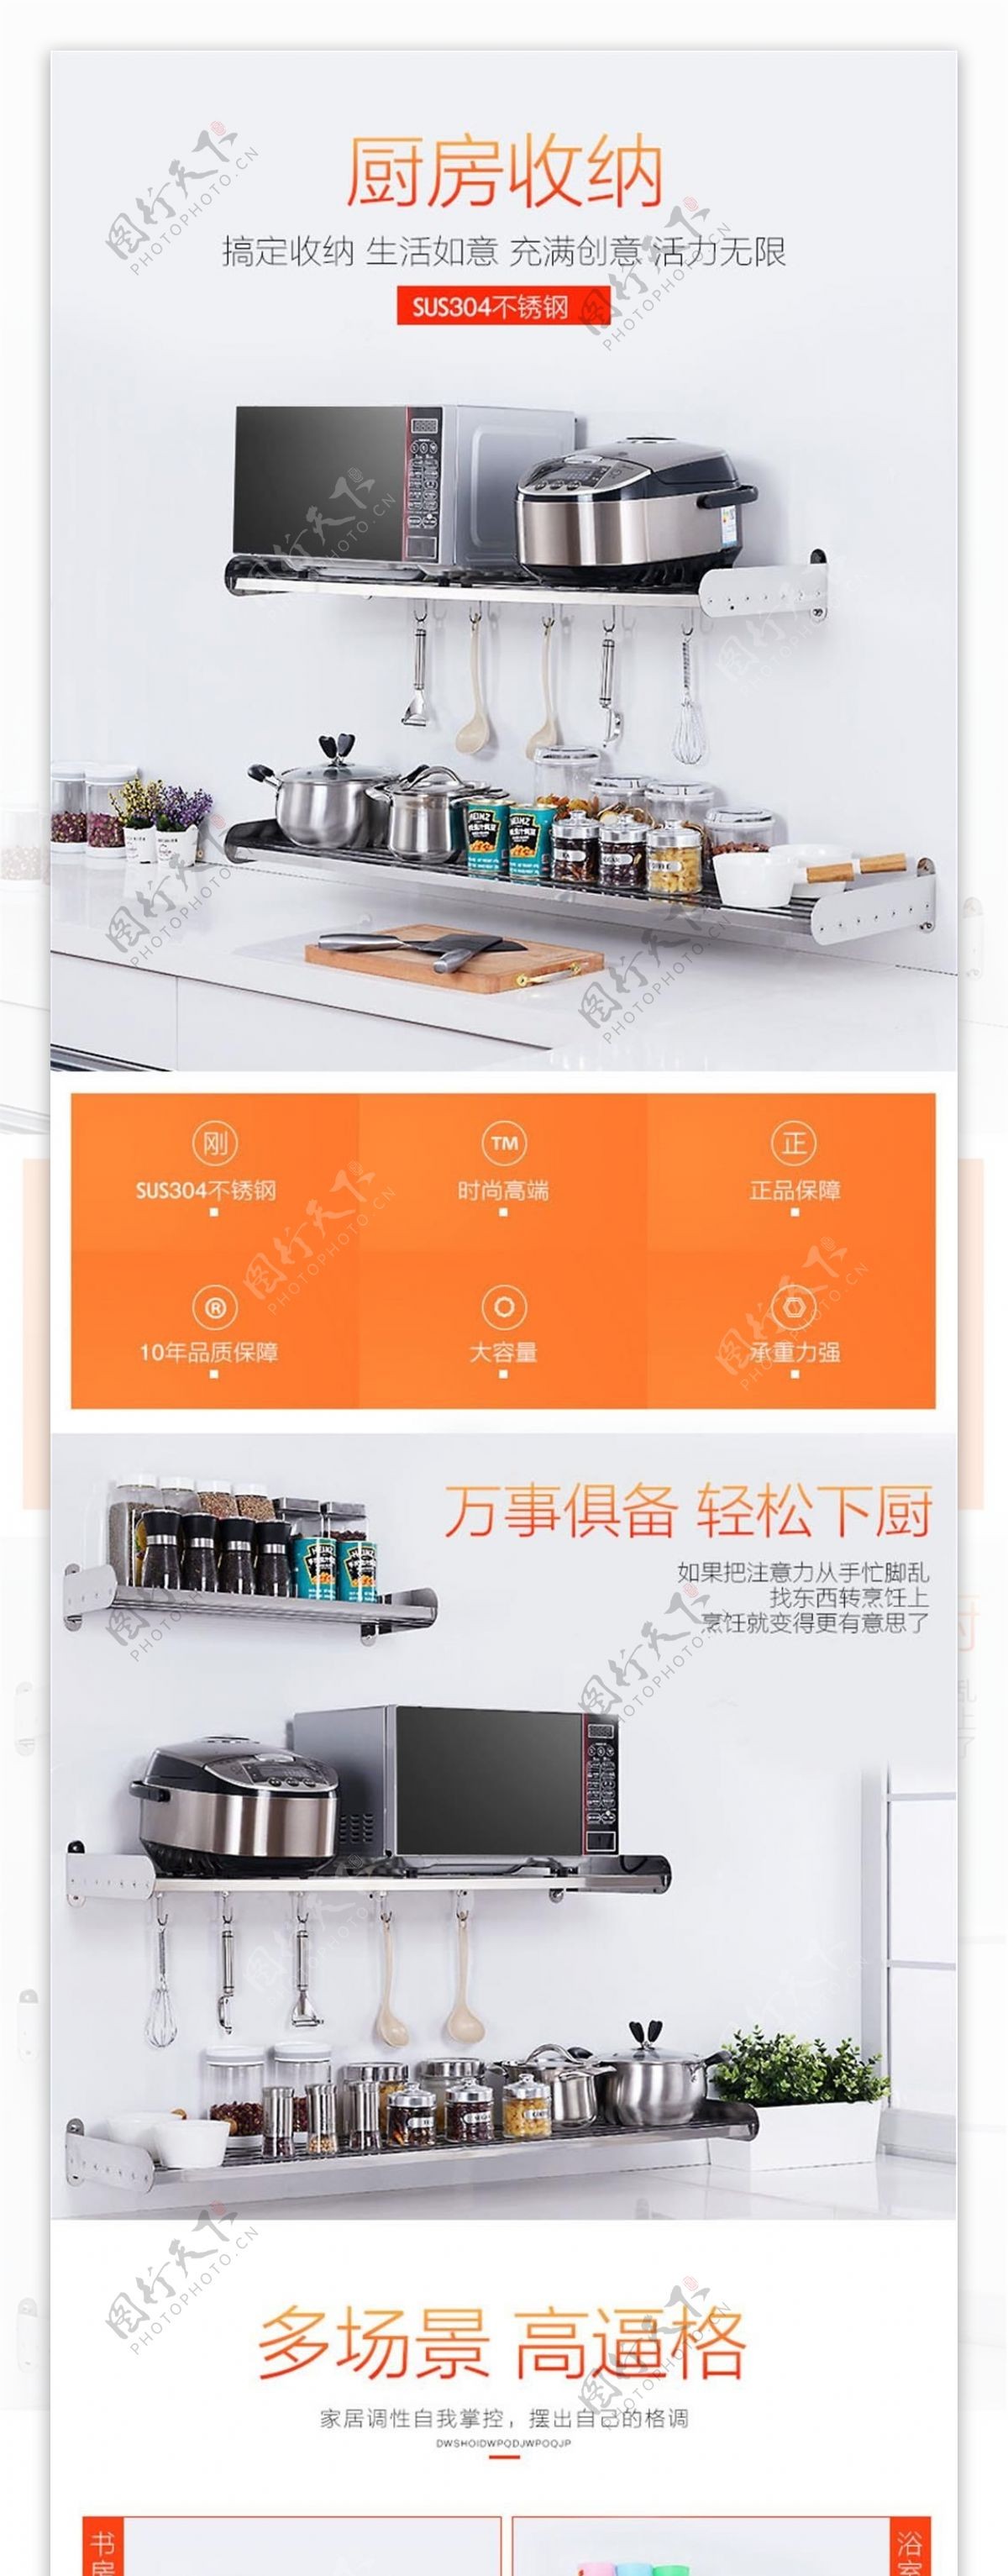 简约清新橙色厨房电器淘宝电商详情页PSD模版